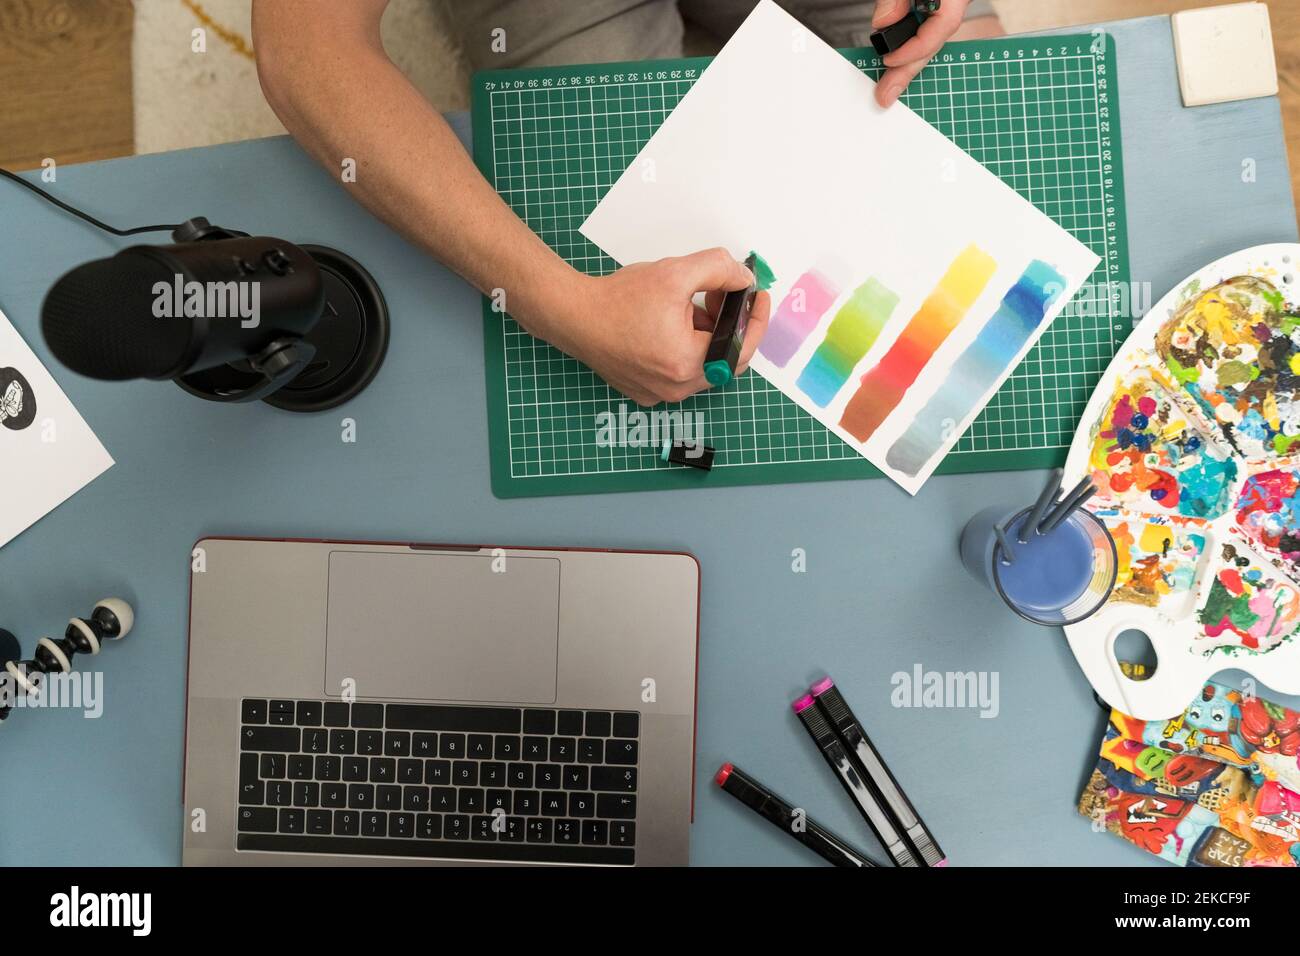 Artiste montrant un dégradé de couleurs avec un stylo à colorier sur du papier pendant diffusion en direct sur un ordinateur portable à la maison Banque D'Images